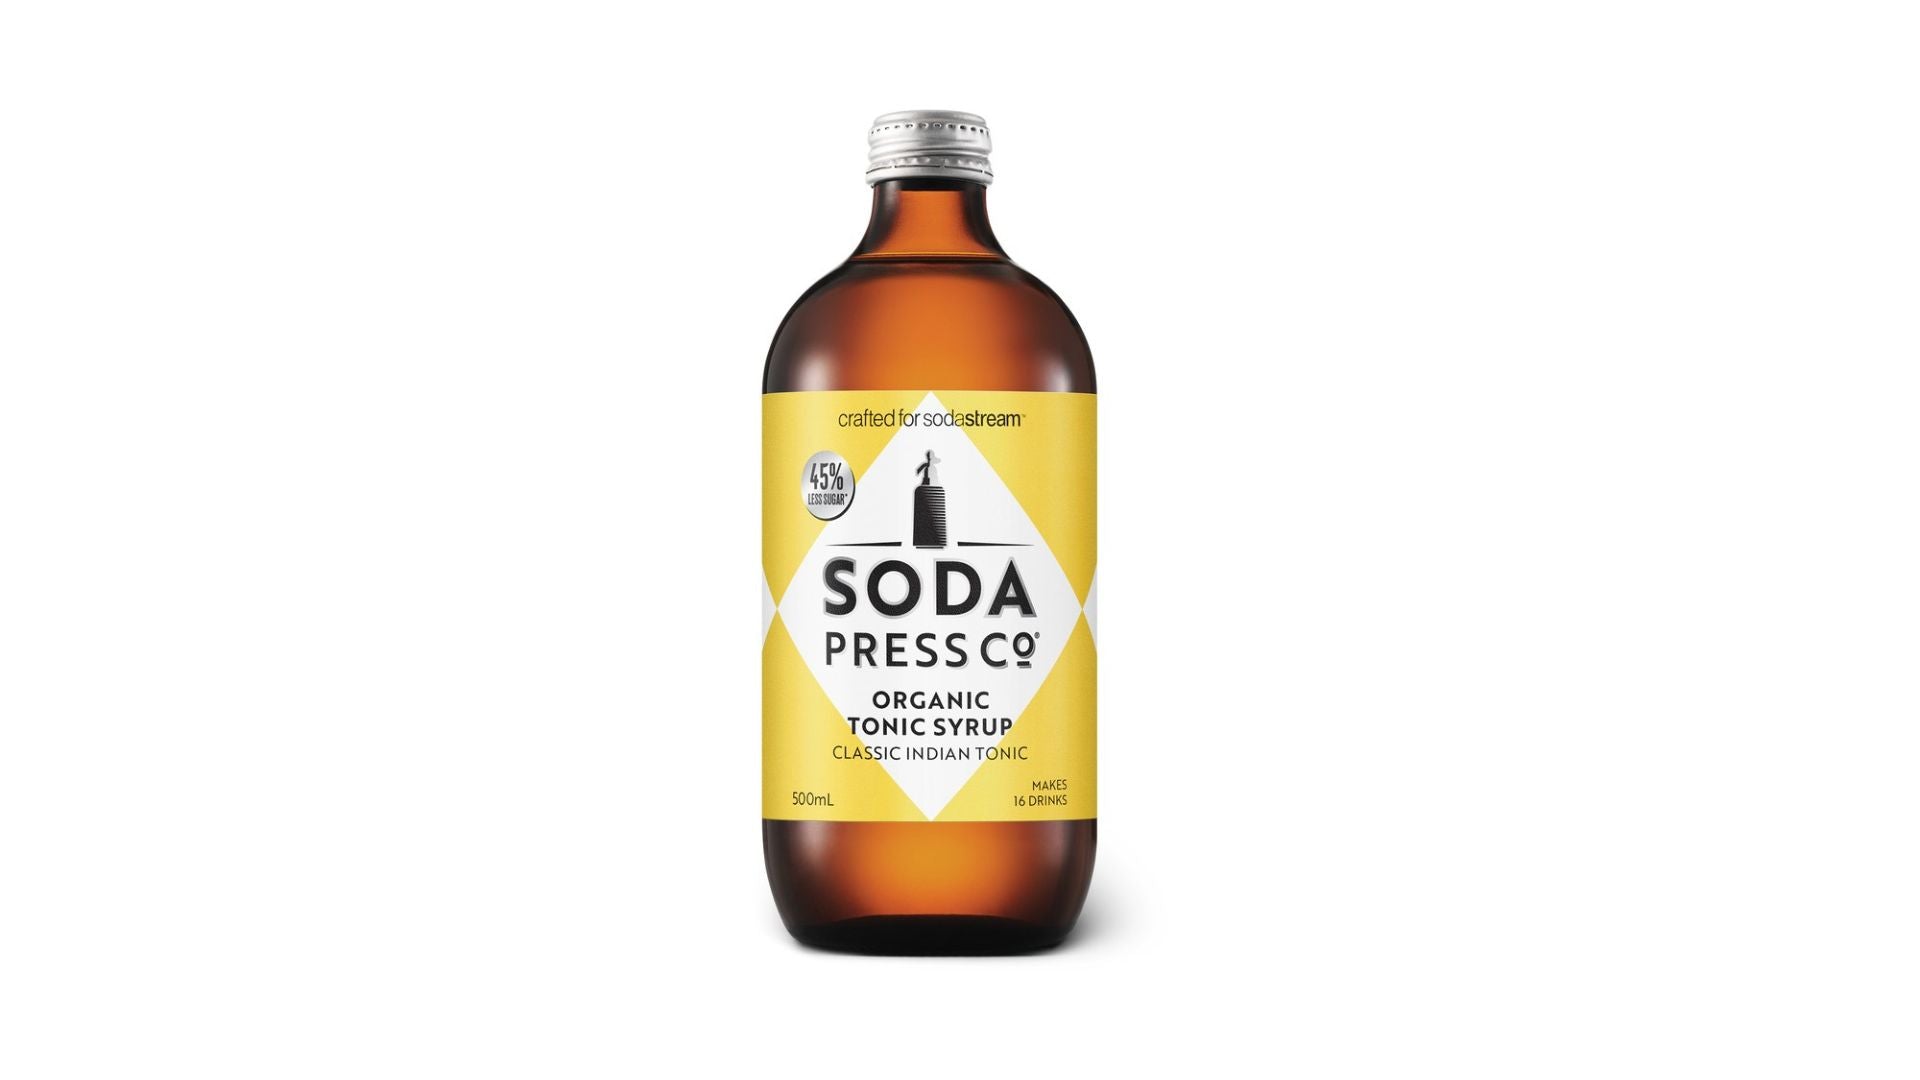 Soda Press Co. Organic Classic Indian Tonic 500ml